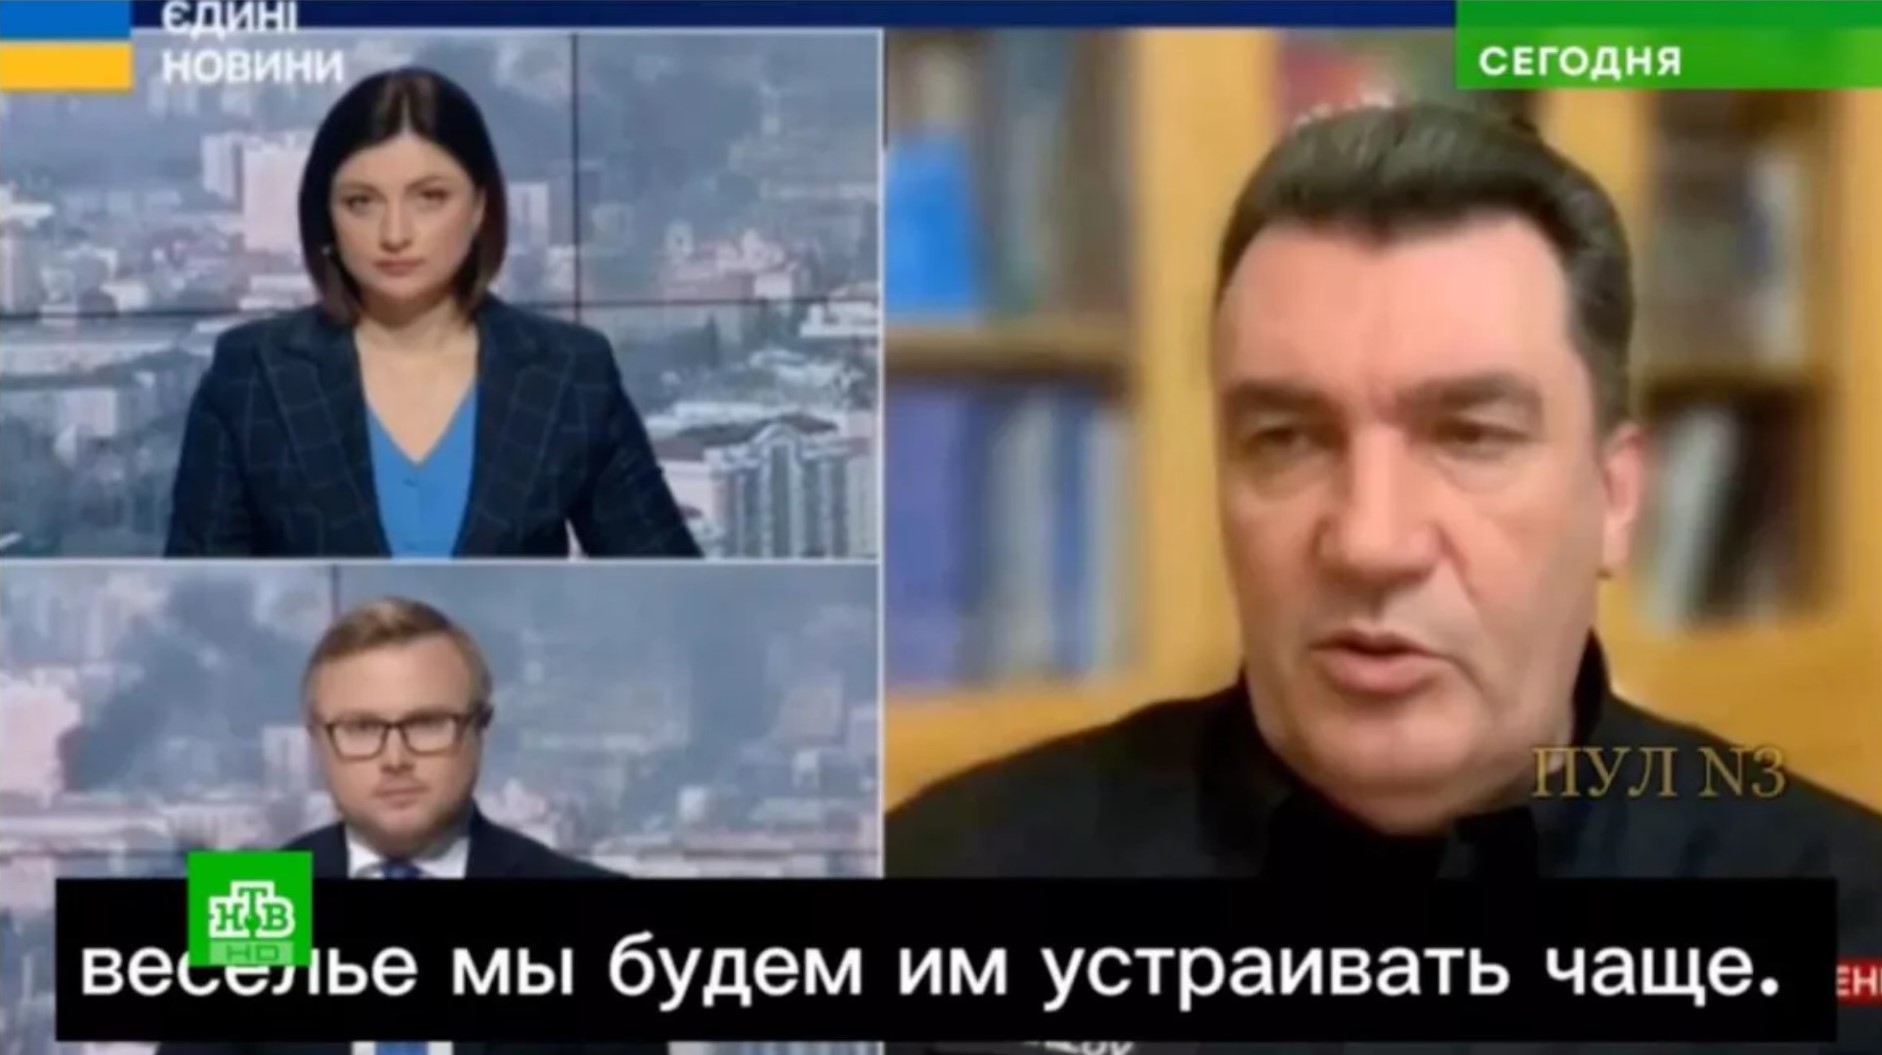 Russian propaganda TV broadcast deepfake video to blame Ukraine for Moscow terrorist attack